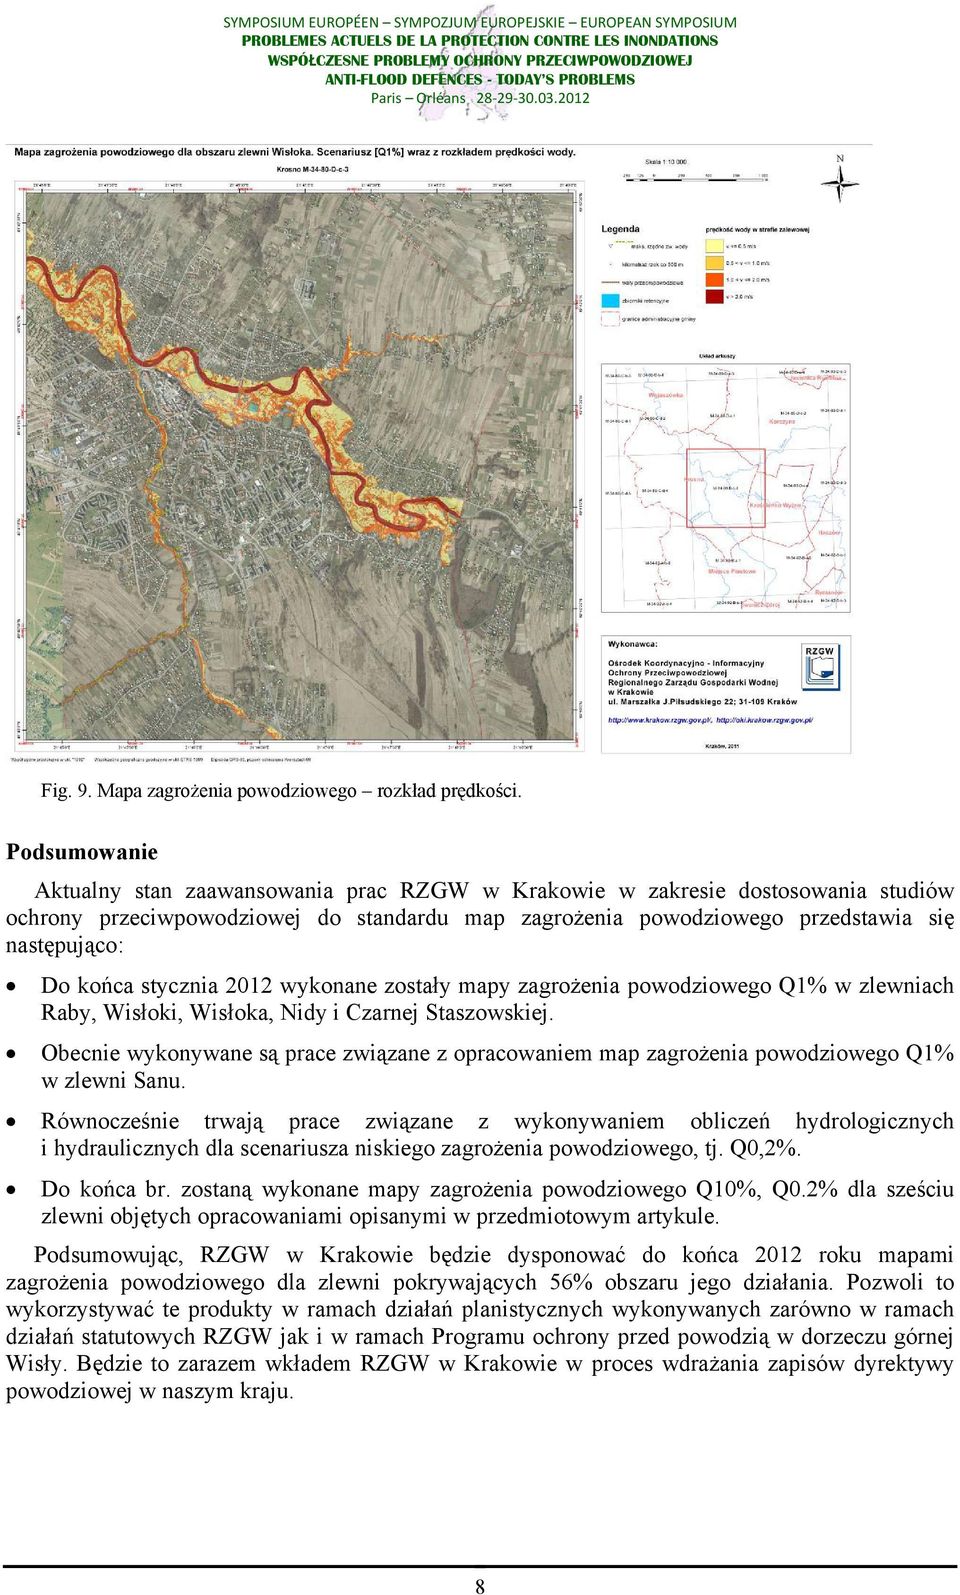 stycznia 2012 wykonane zostały mapy zagrożenia powodziowego Q1% w zlewniach Raby, Wisłoki, Wisłoka, Nidy i Czarnej Staszowskiej.